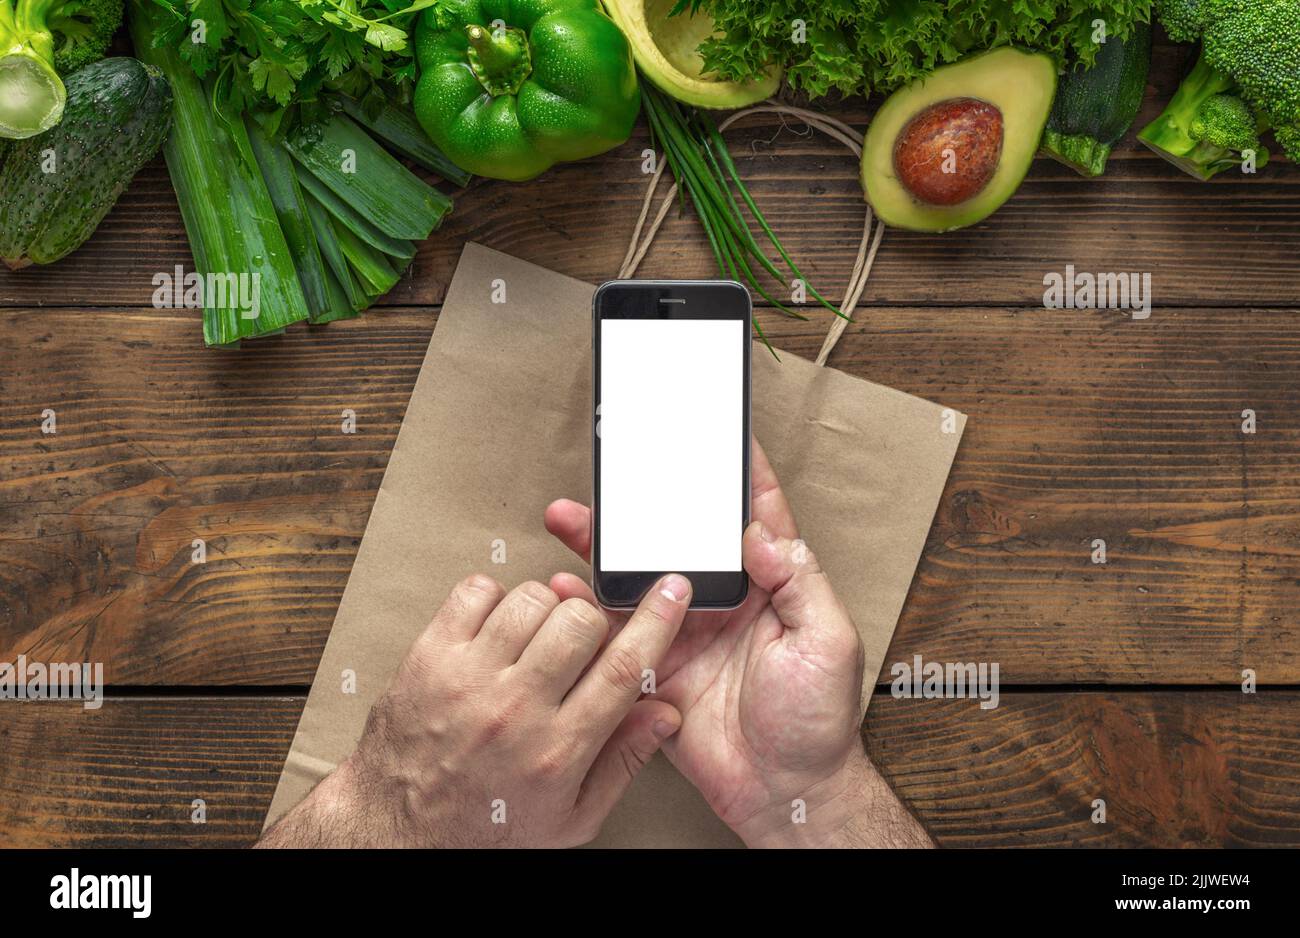 Ordinare cibo online l'uomo tiene il telefono cellulare con schermo vuoto su tavolo di legno con verdure fresche verdi vista dall'alto Foto Stock